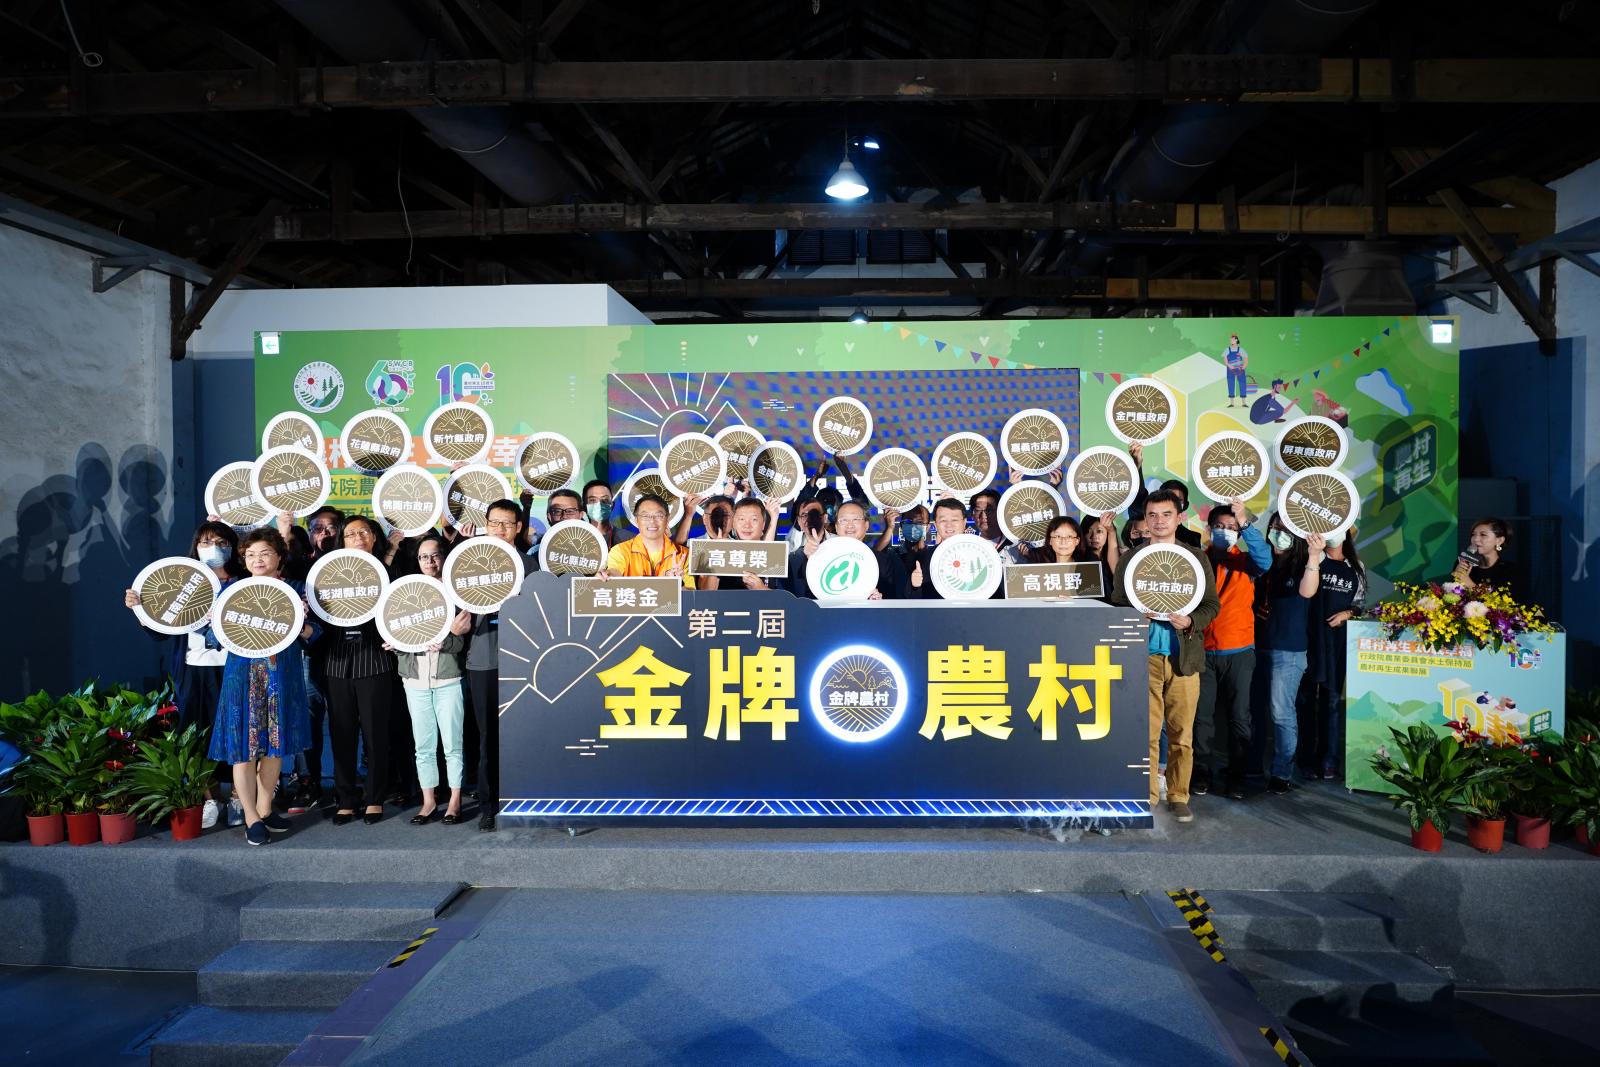 行政院農業委員會22縣市政府合影宣示第二屆金牌農村競賽正式啟動